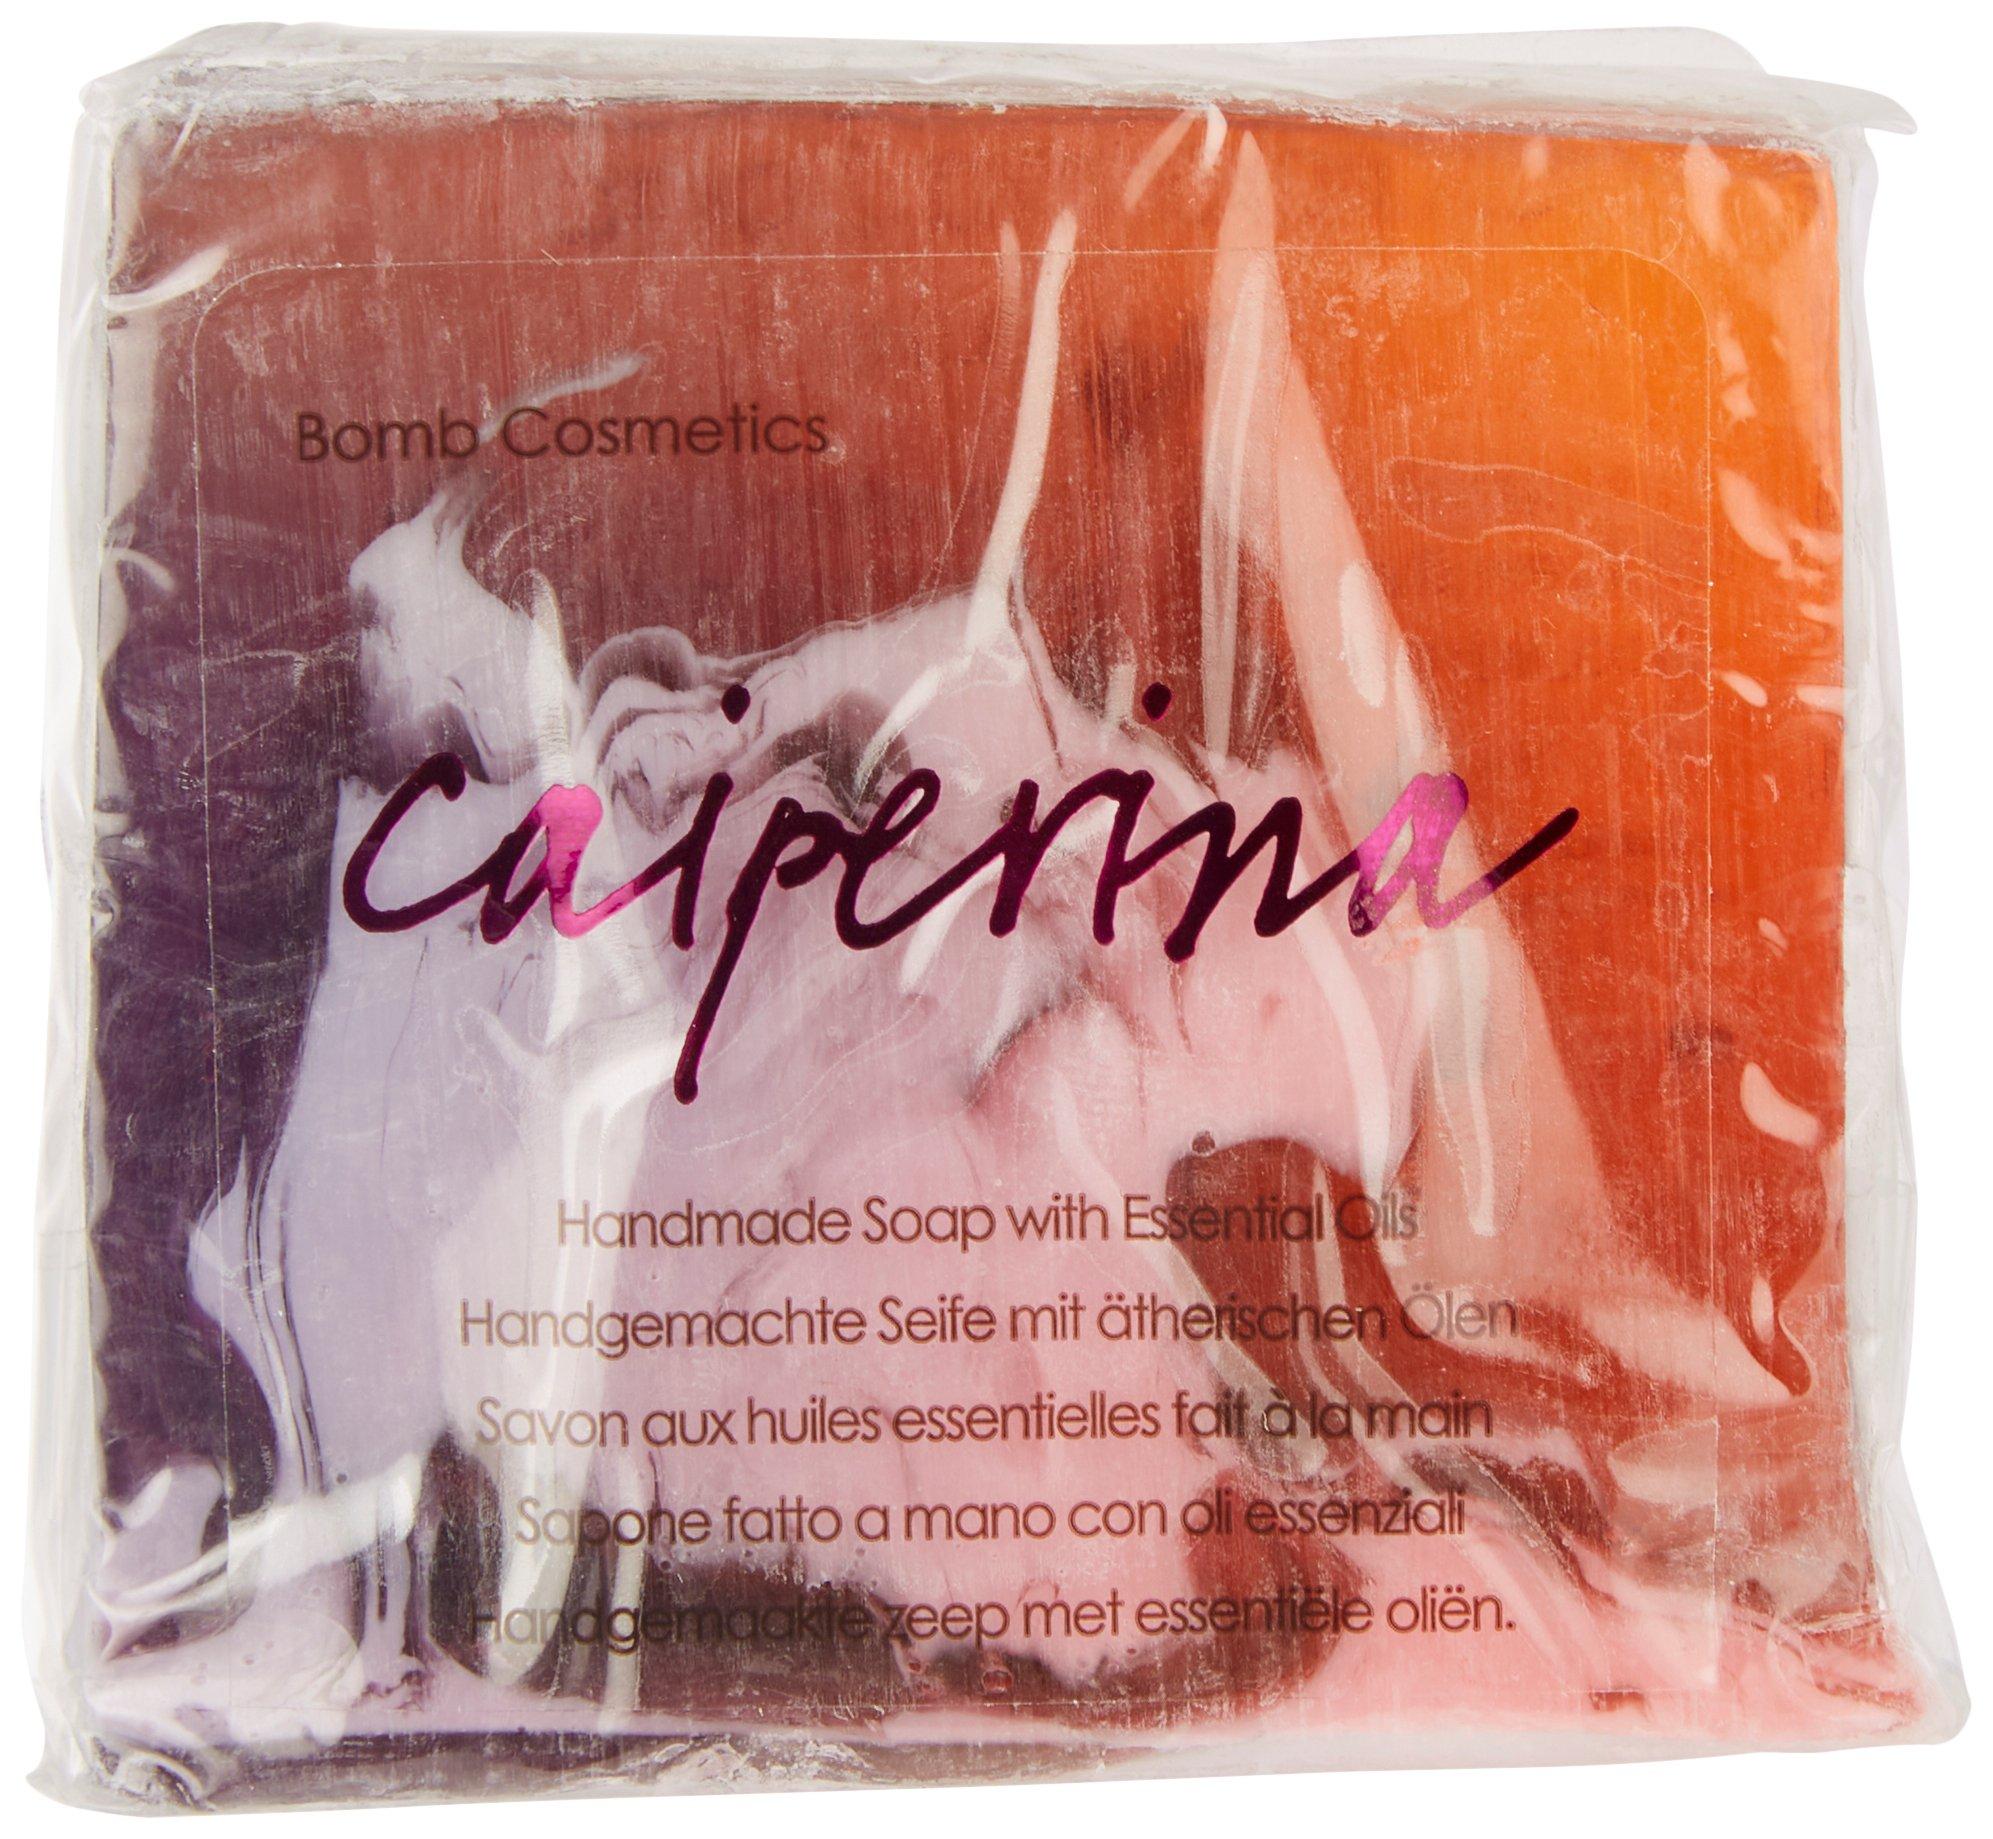 Caiperina Handmade Soap